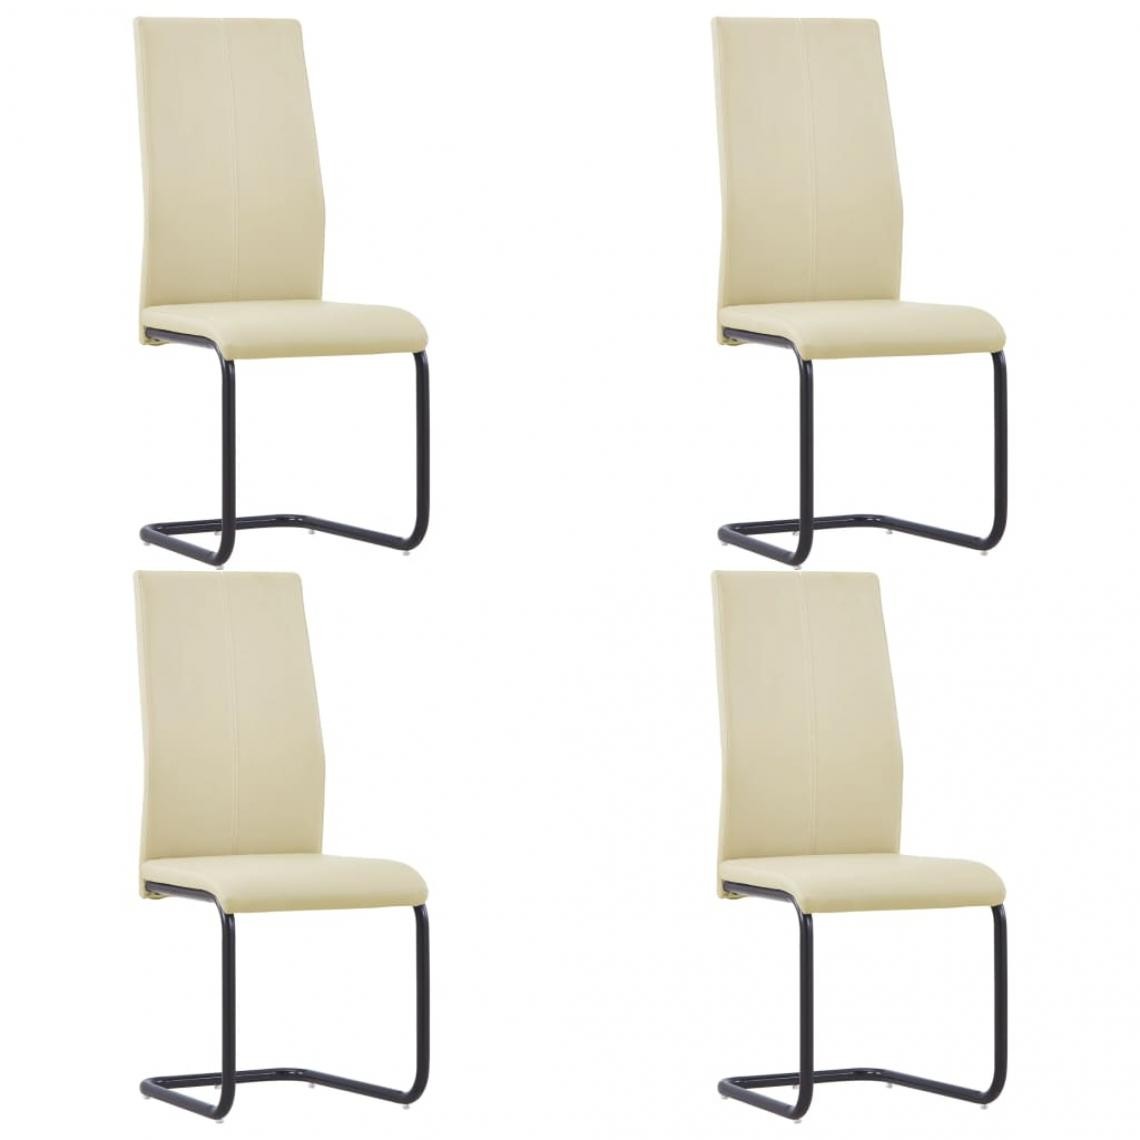 Decoshop26 - Lot de 4 chaises de salle à manger cuisine cantilever design moderne similicuir cappuccino CDS021355 - Chaises